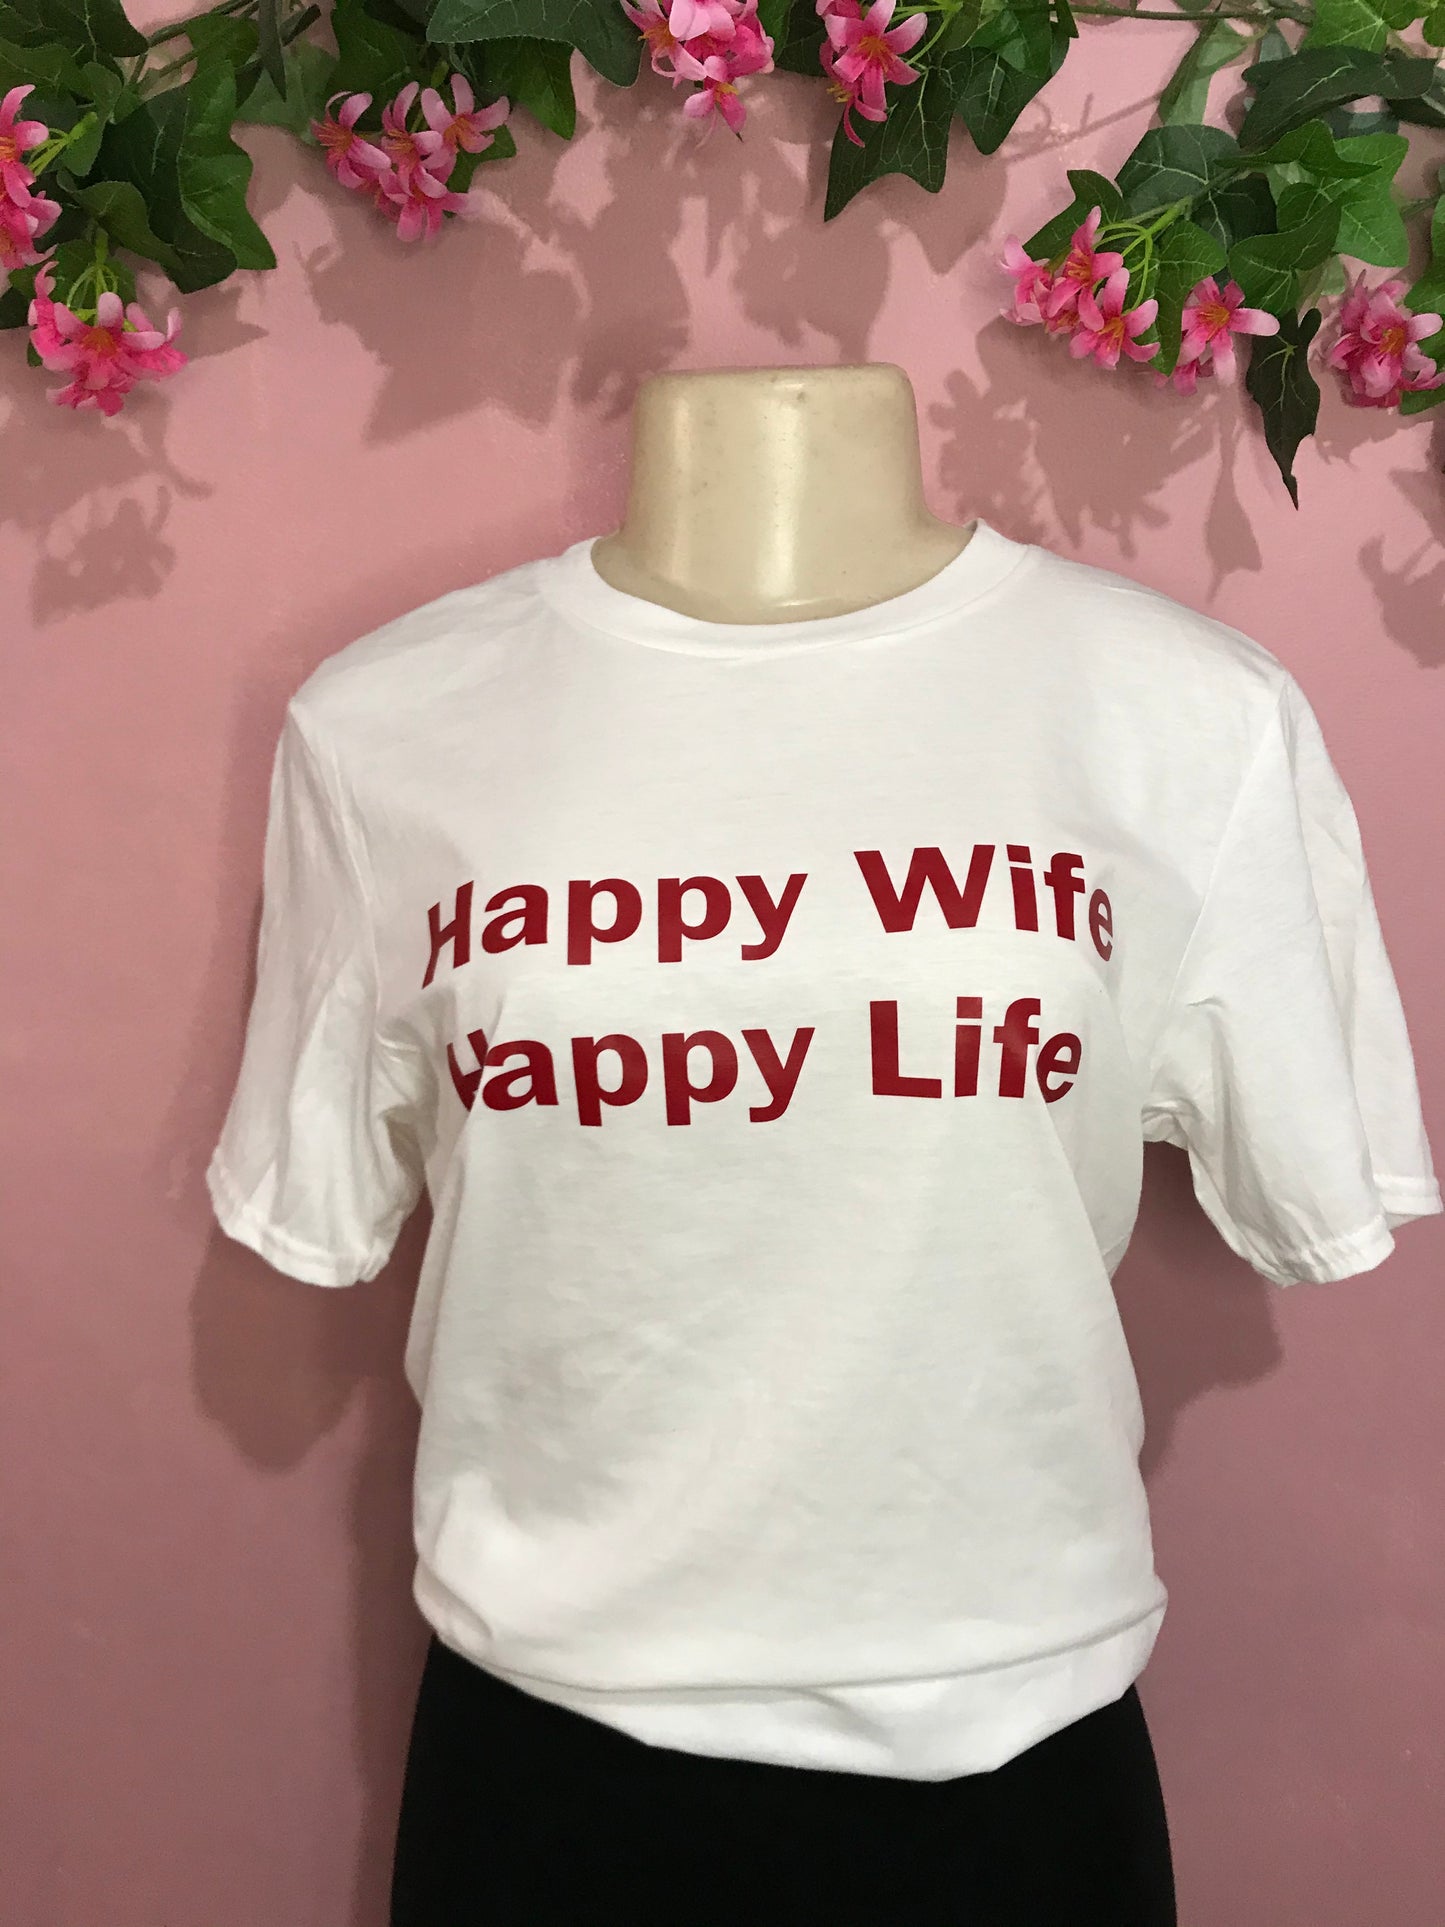 Instock happy wife happy life